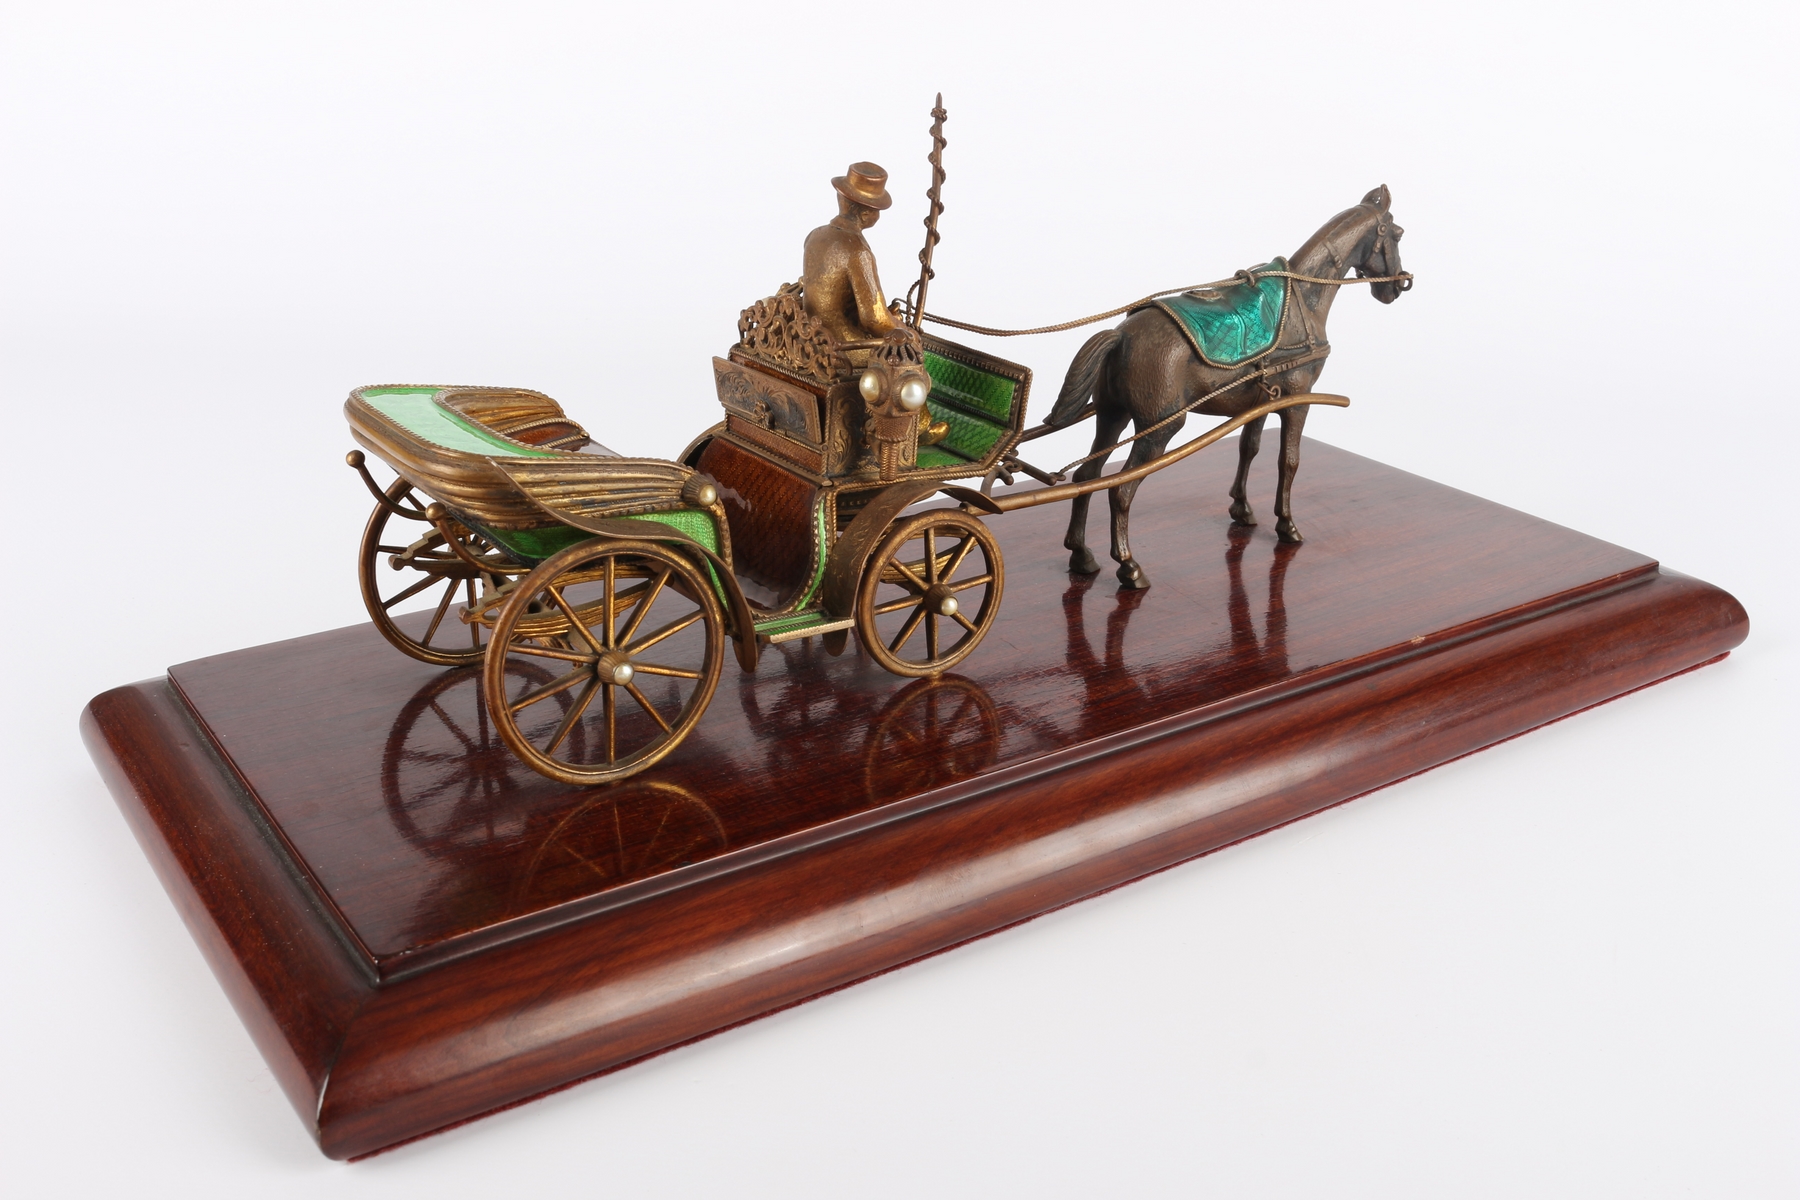 Wiener Pferdekutsche, horse carriage, - Image 3 of 6